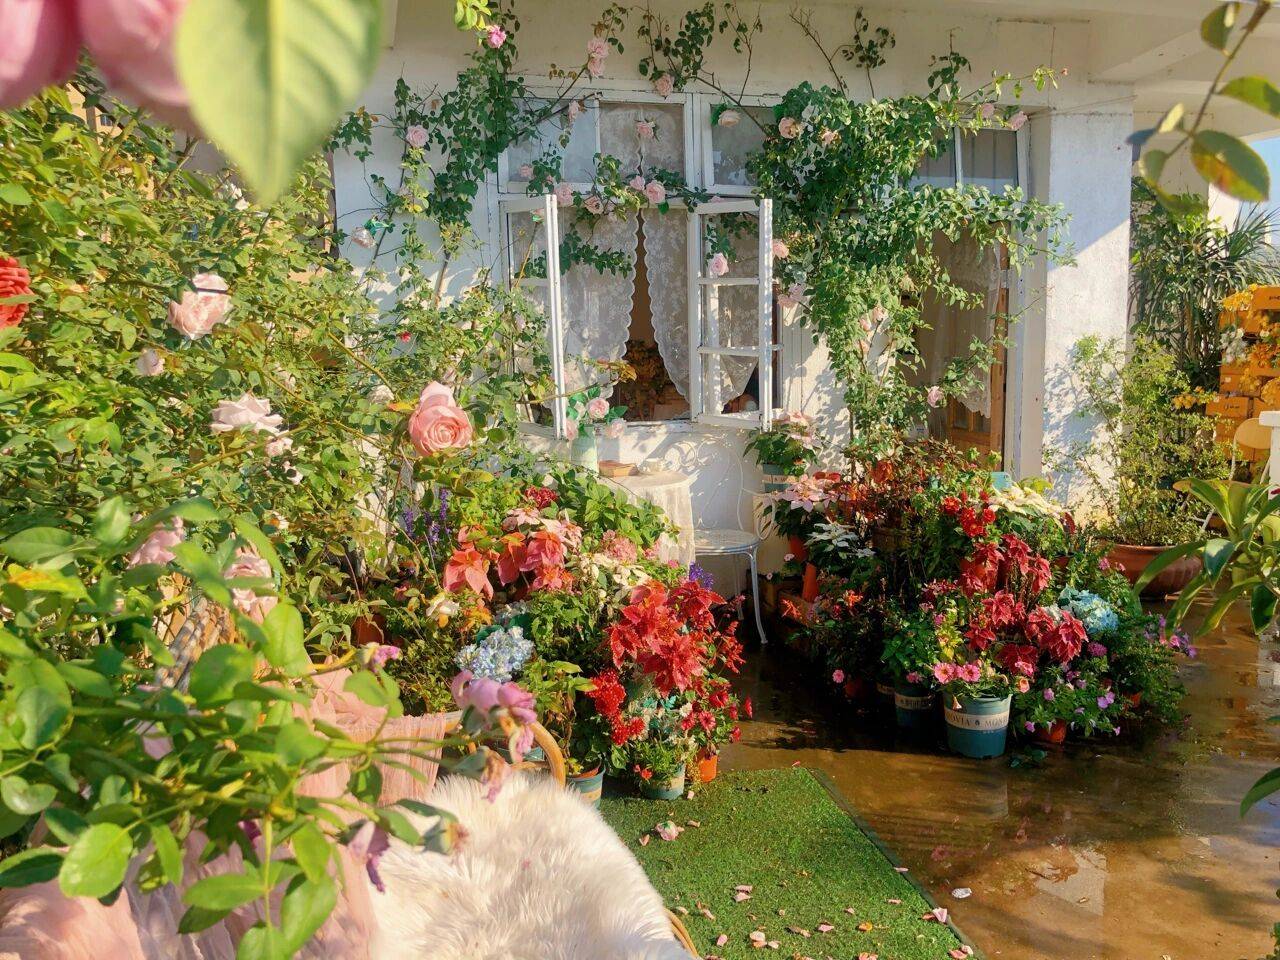 Đam mê với việc trồng hoa, cô nàng độc thân 27 tuổi thuê nhà trên sân thượng để tạo ra khu vườn đẹp như tranh vẽ của riêng mình - Ảnh 1.